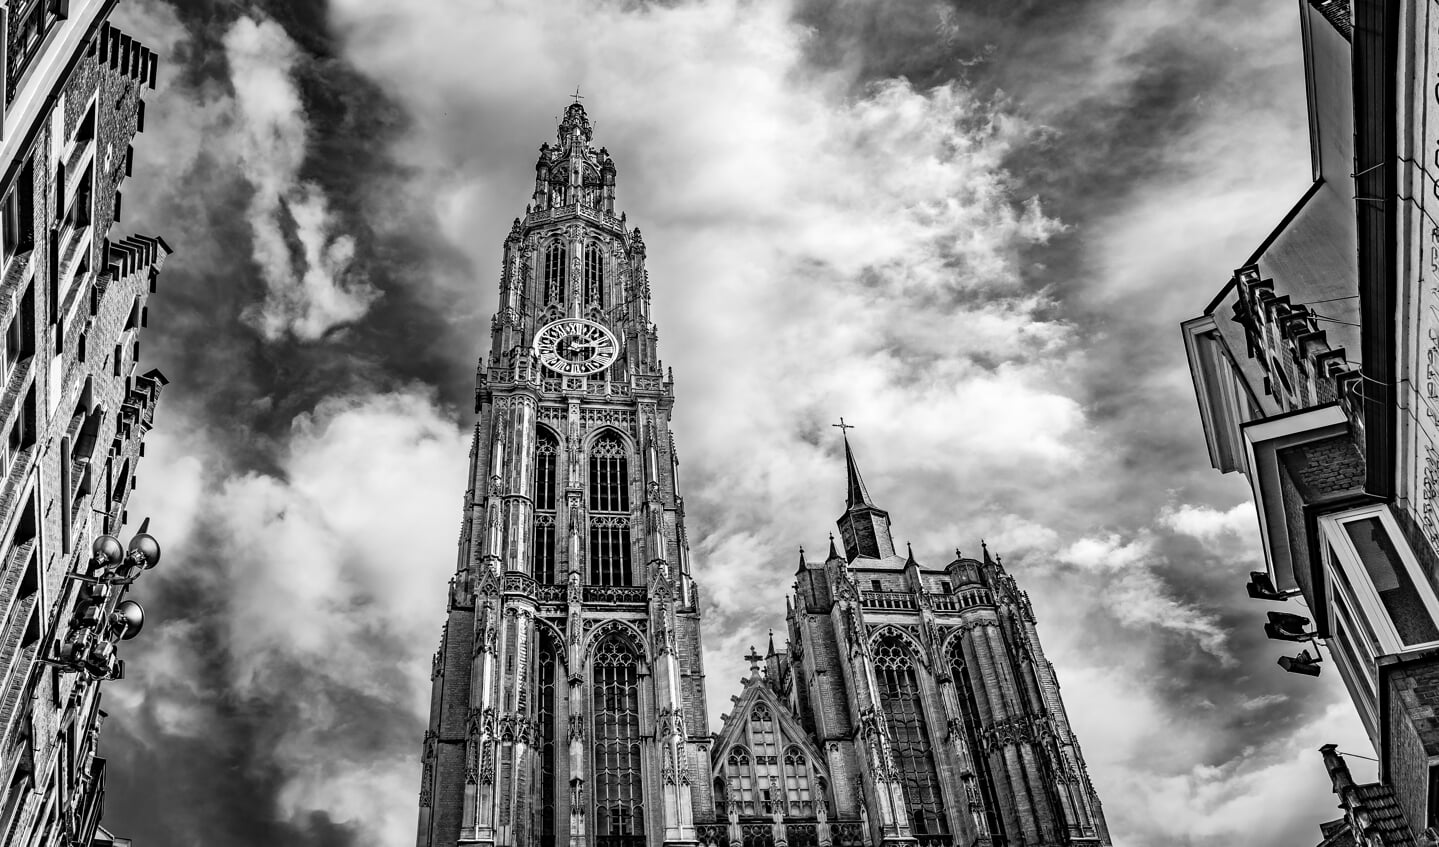 De Onze-Lieve-Vrouwe-kathedraal aan de Handschoenmarkt in Antwerpen.